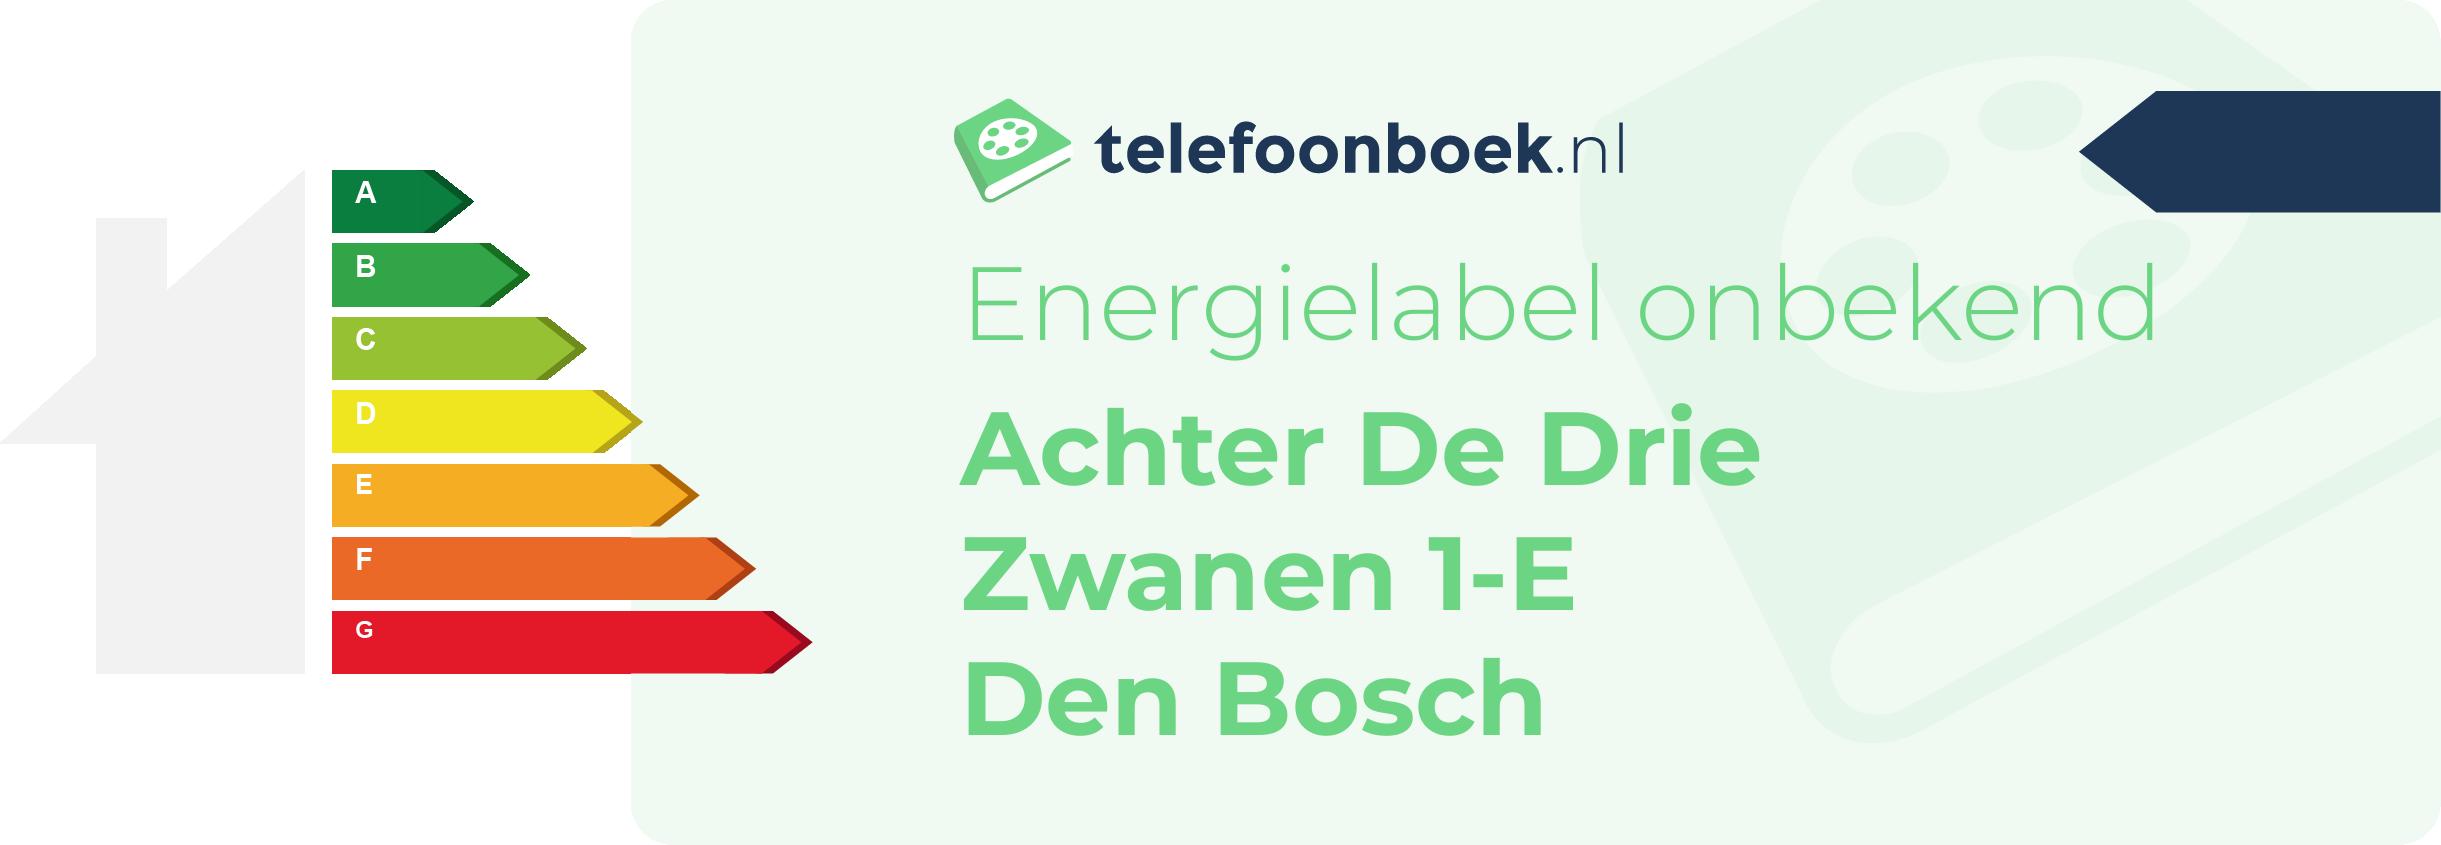 Energielabel Achter De Drie Zwanen 1-E Den Bosch